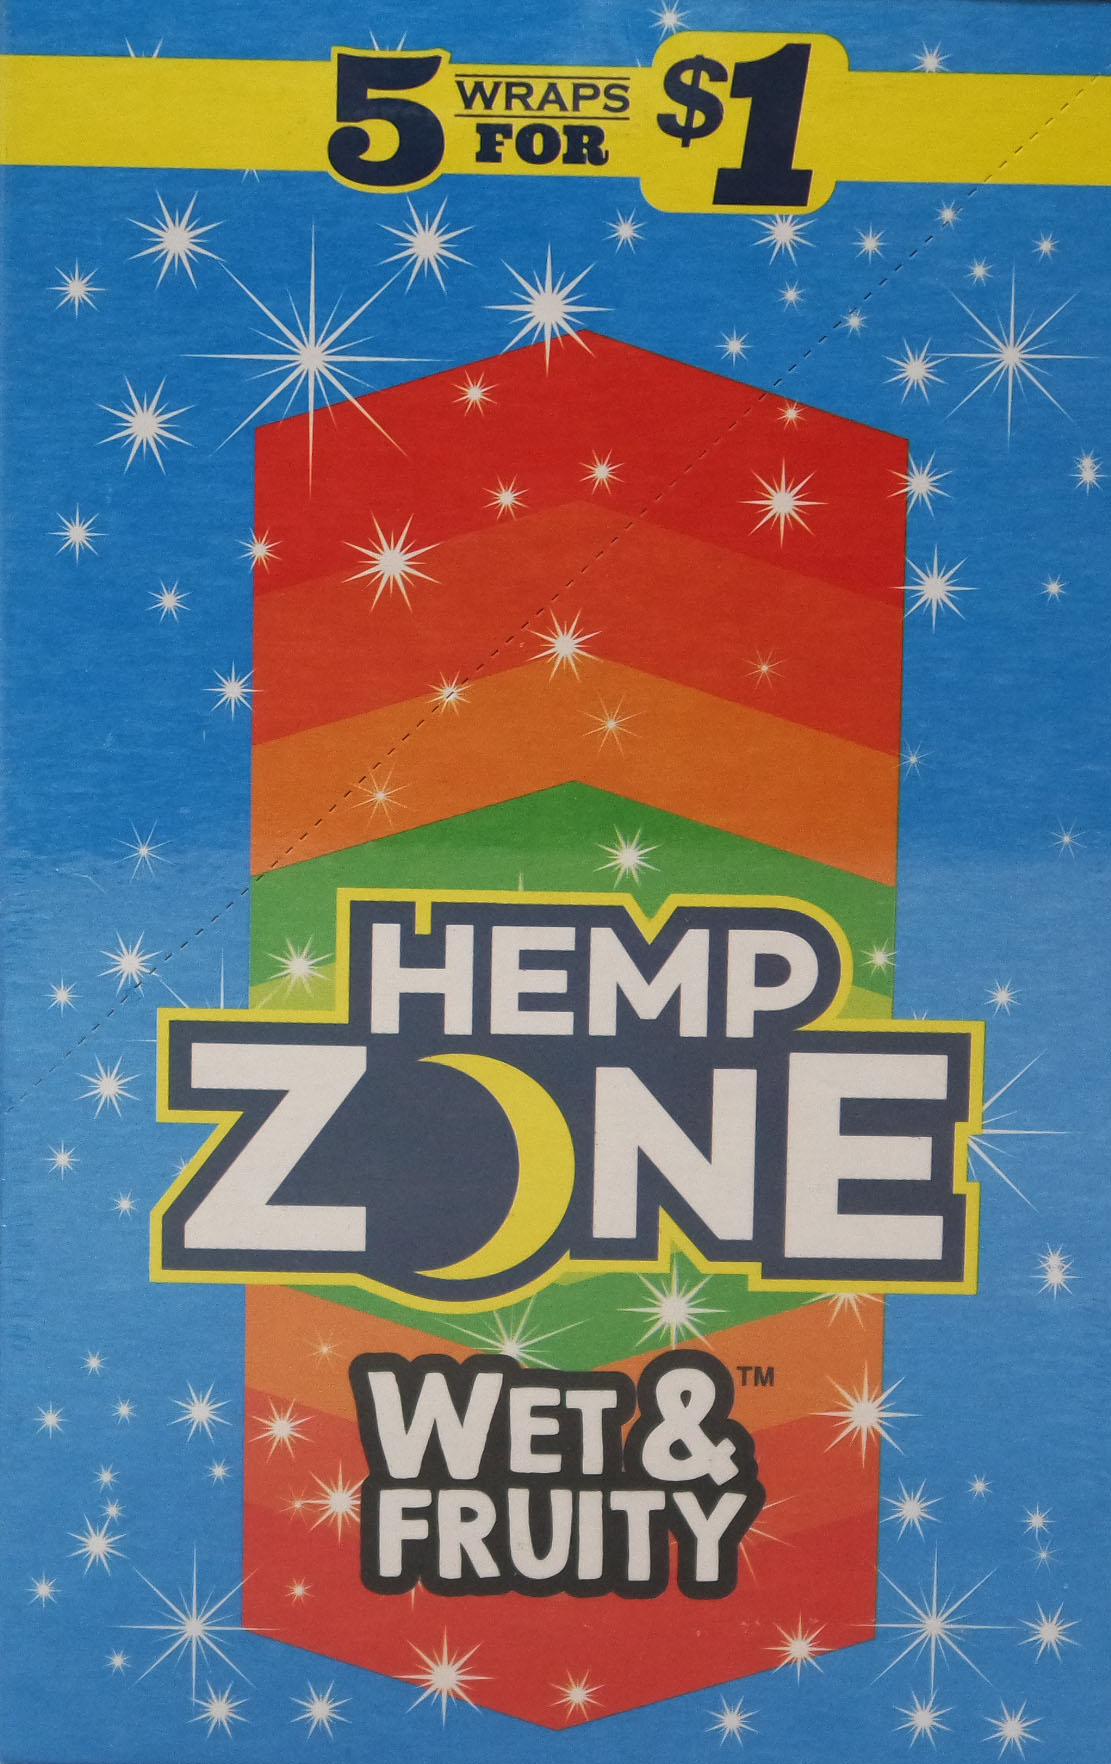 Hemp zone wet & fruity wraps 5/$1 15/5pk